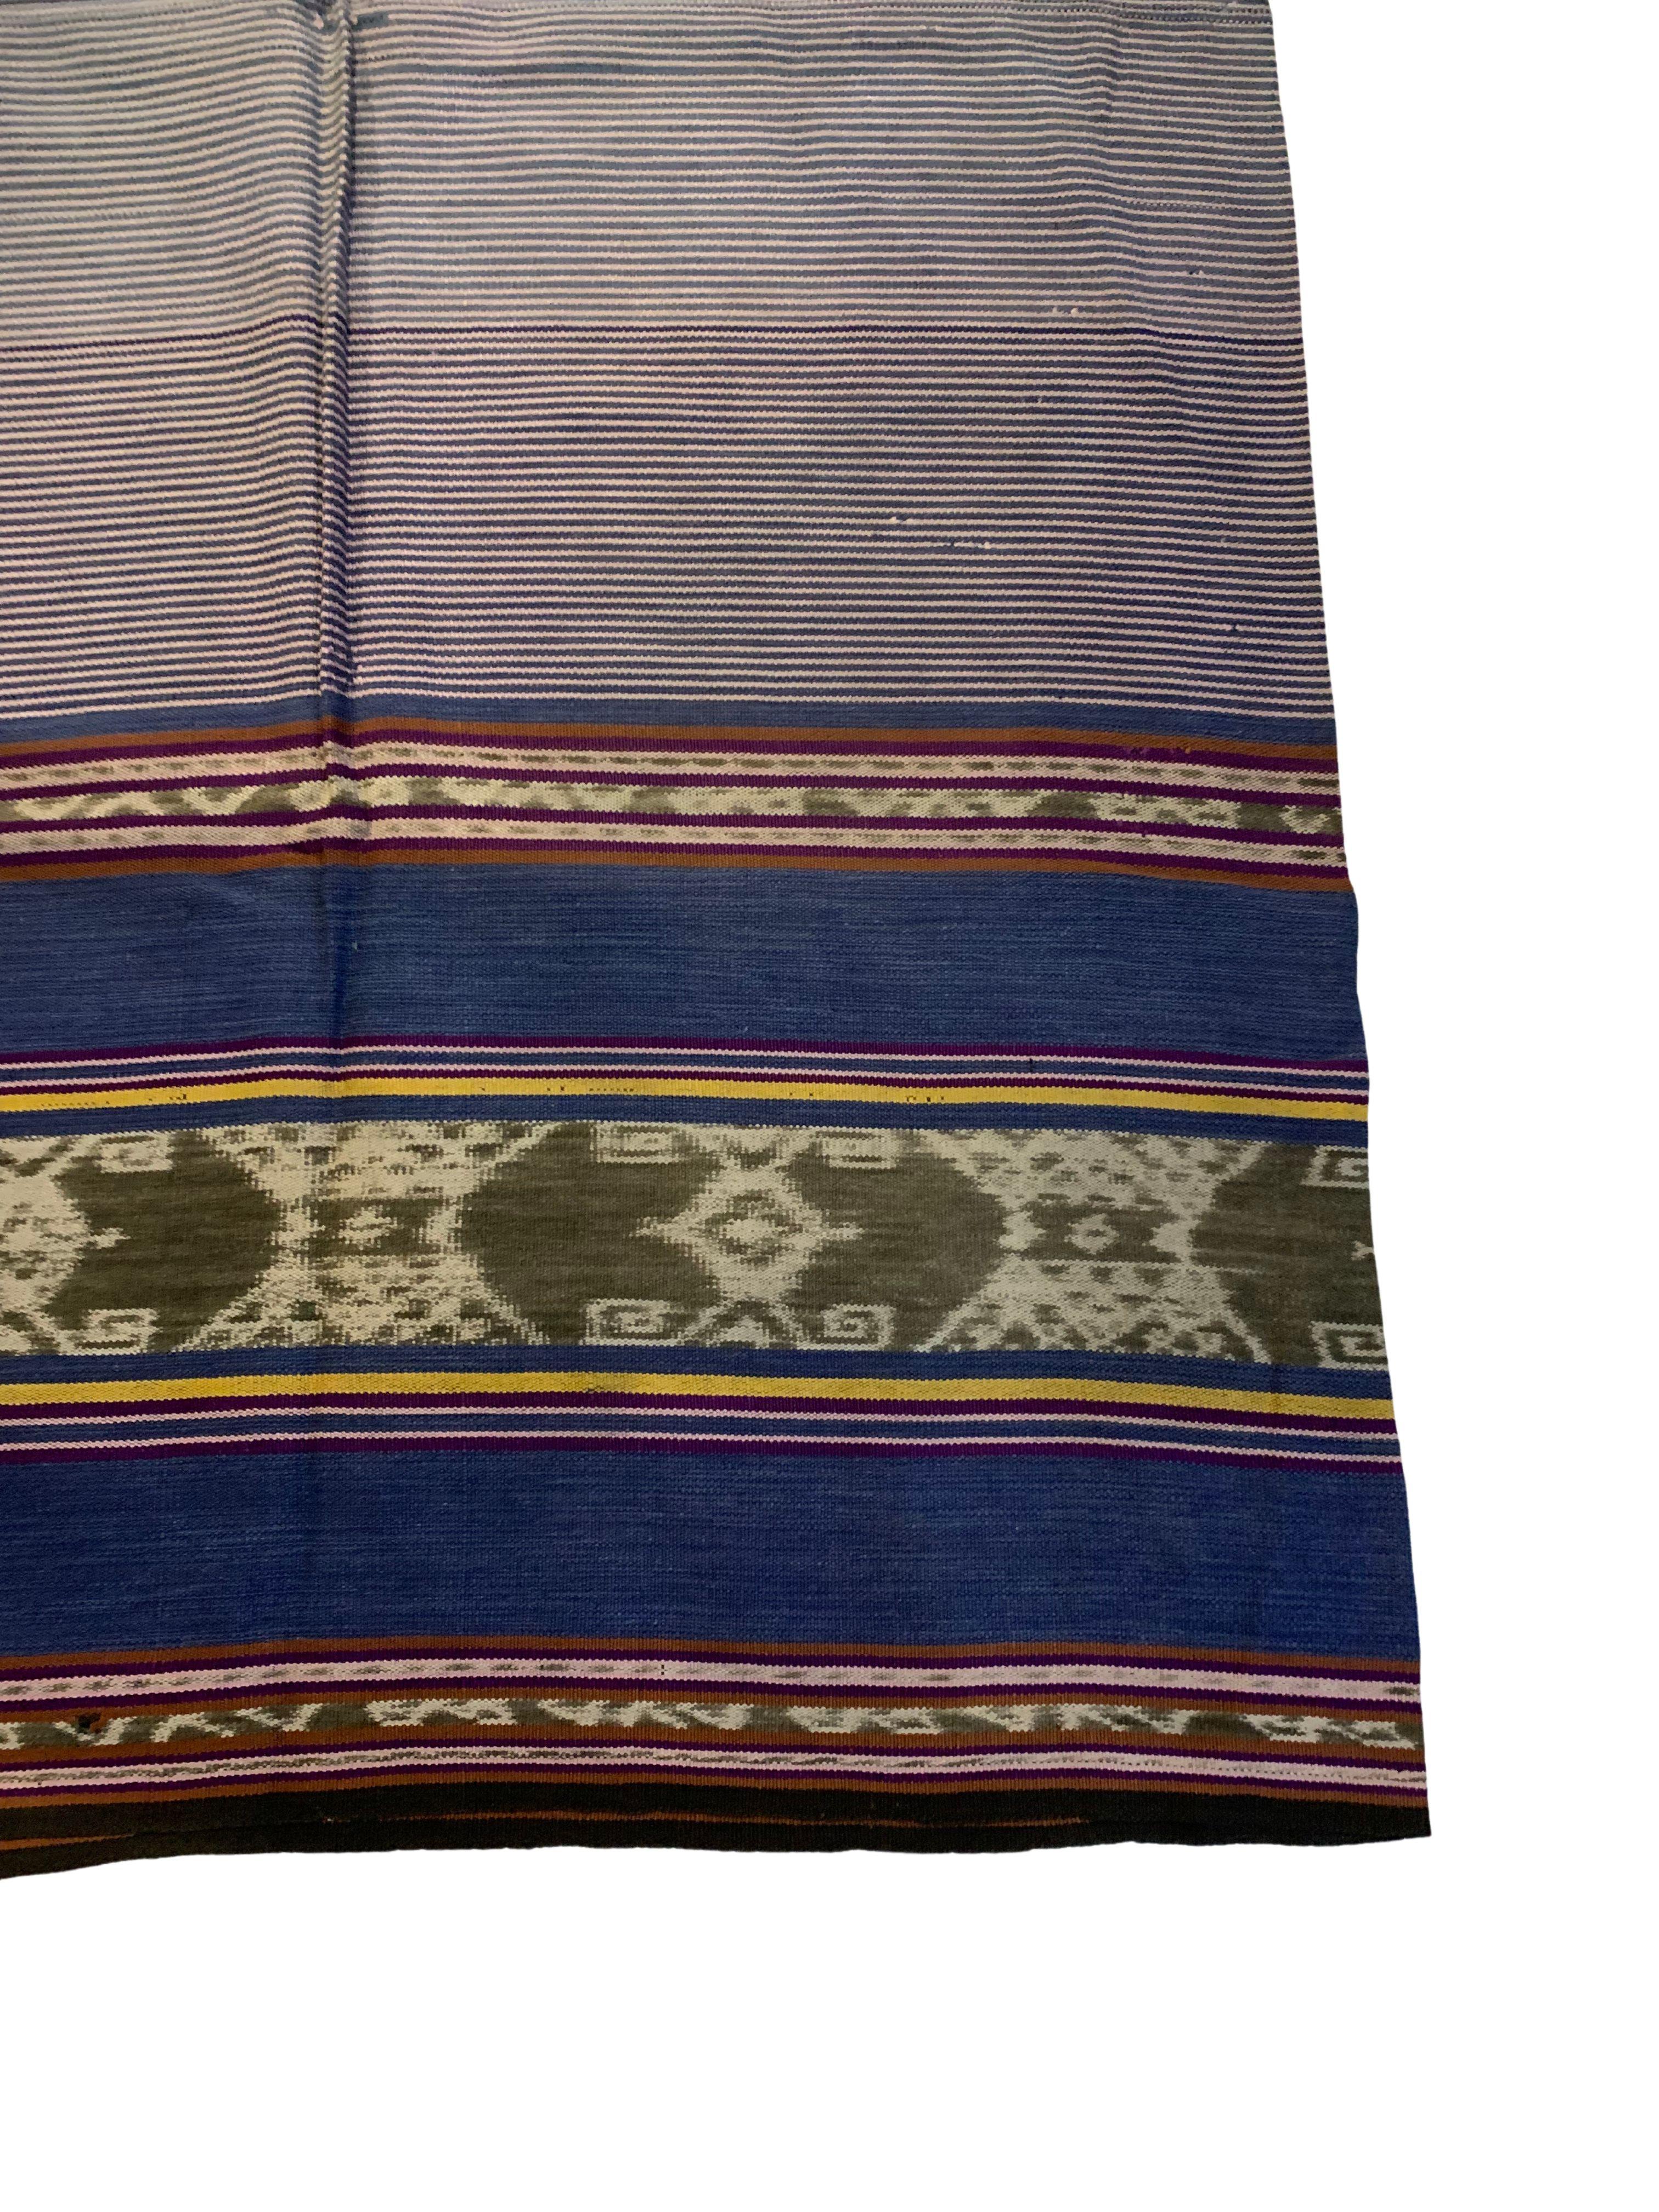 Ikat-Textil von Timor-Insel mit atemberaubendem naturfarbenem Farbstoff, Indonesien (Sonstiges) im Angebot